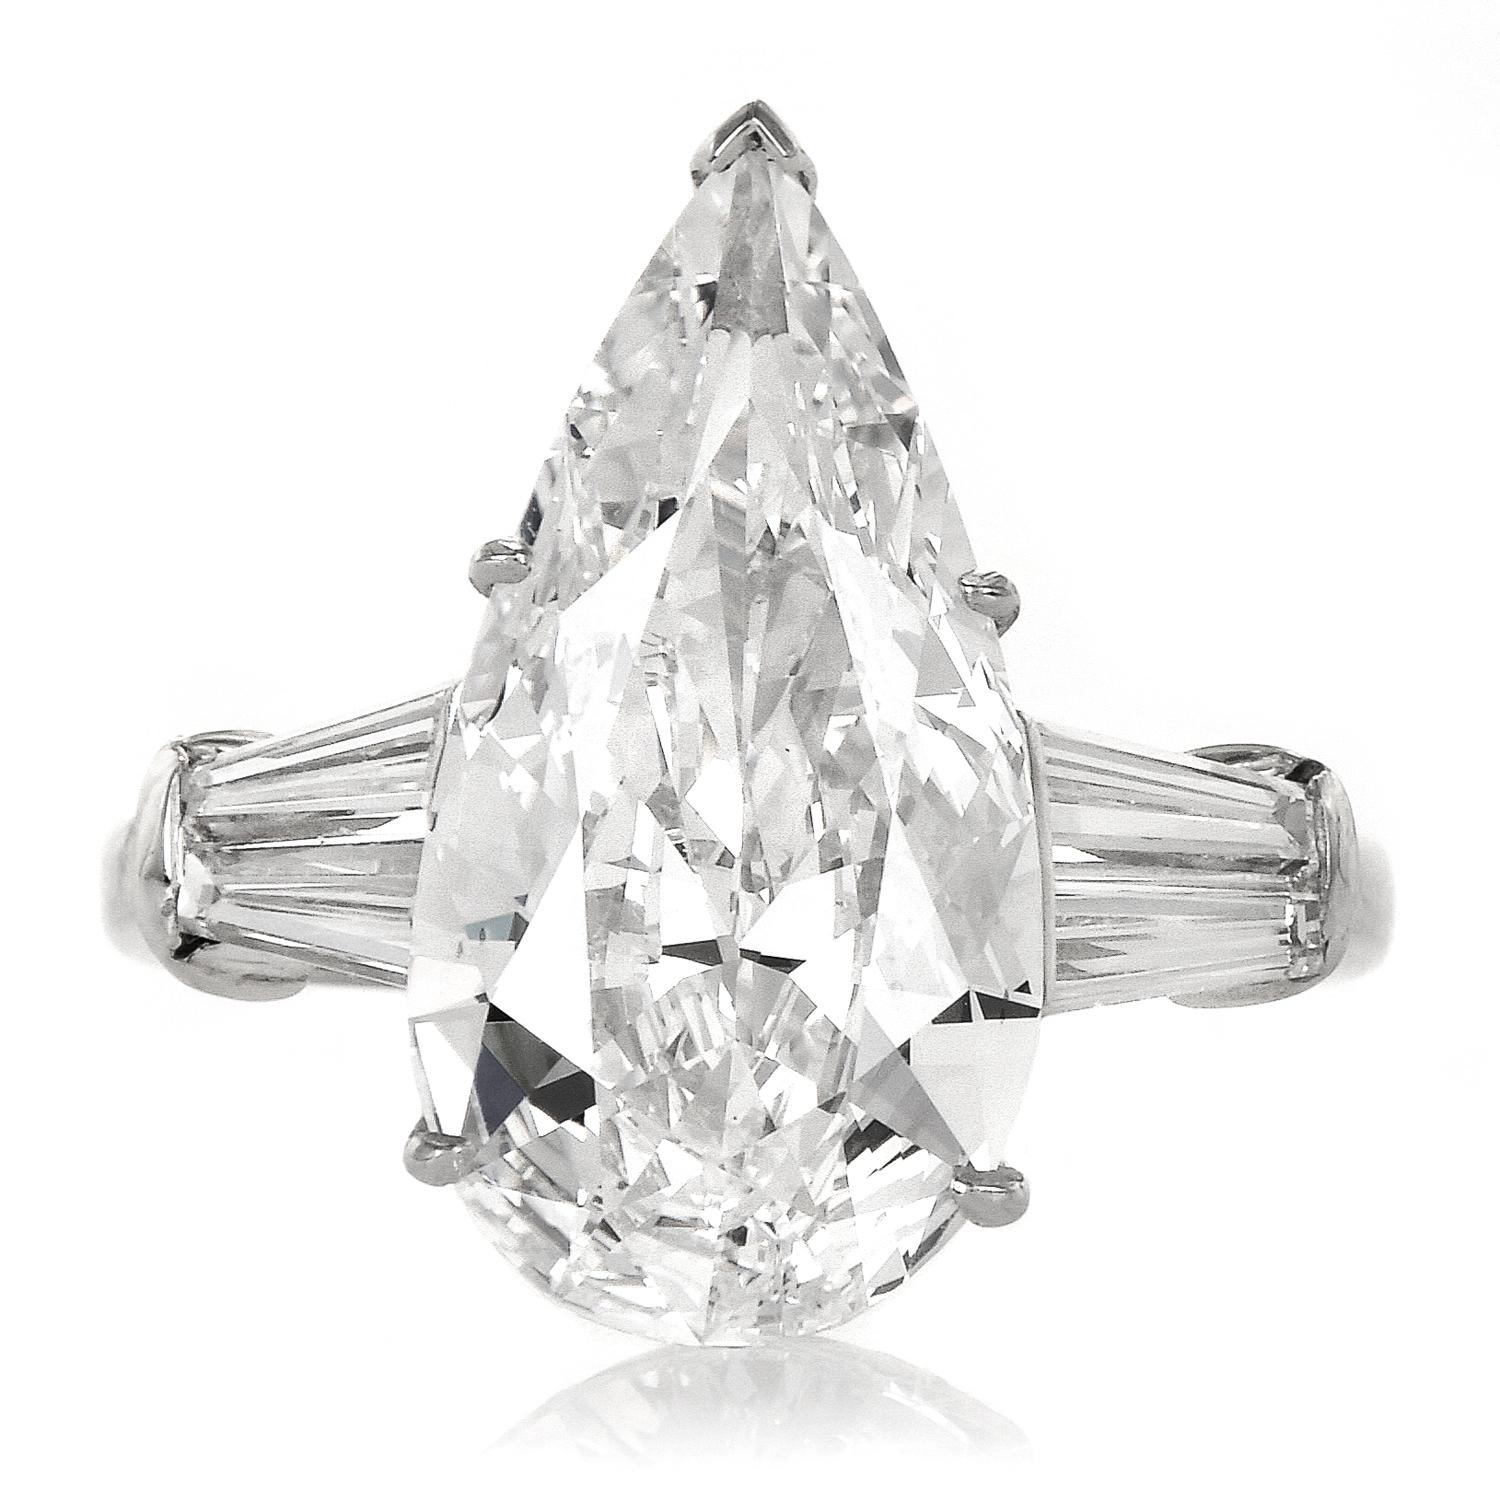 Dieser exquisite Diamant-Verlobungsring wird von einem länglichen birnenförmigen Diamanten von ca. 6,16cttw zentriert. GIA bewertete den Diamanten mit der höchsten Farbstufe D und einer ausgezeichneten Reinheit von VS1.

Die Seiten sind mit 4 spitz